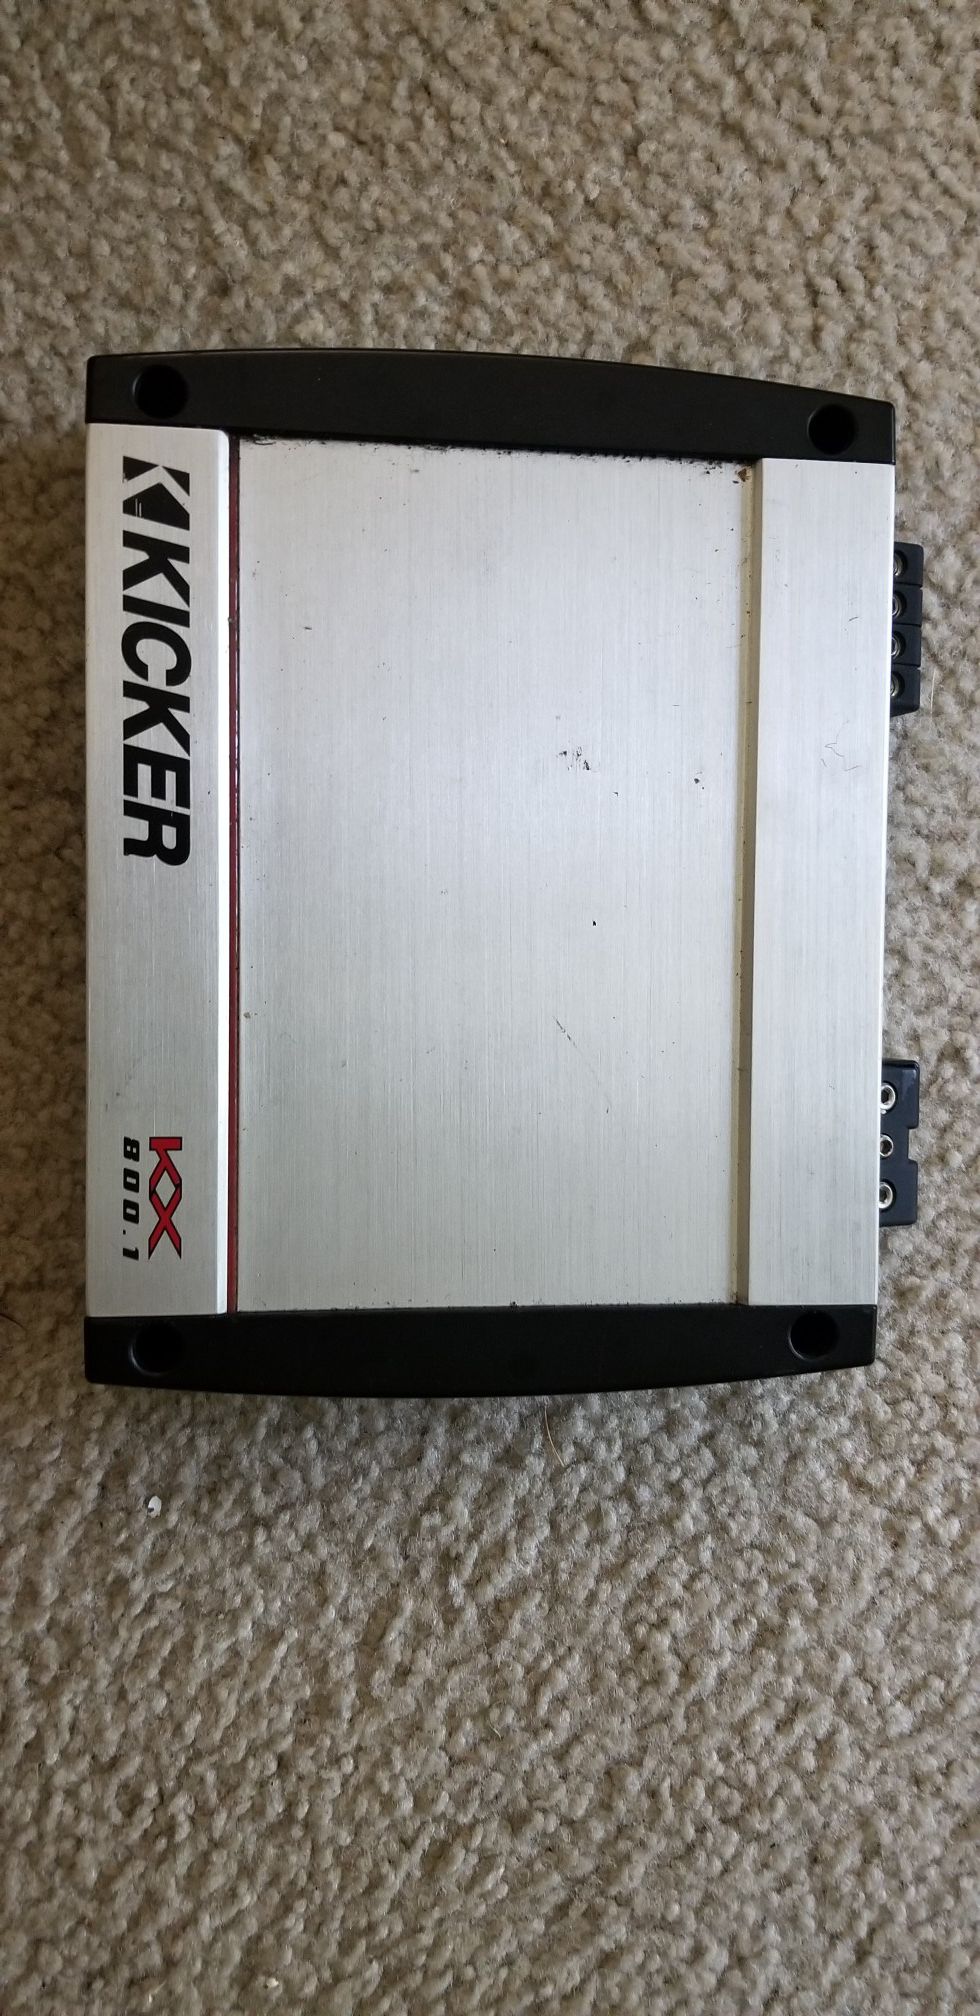 Kicker kx800 mono subwoofer amplifier